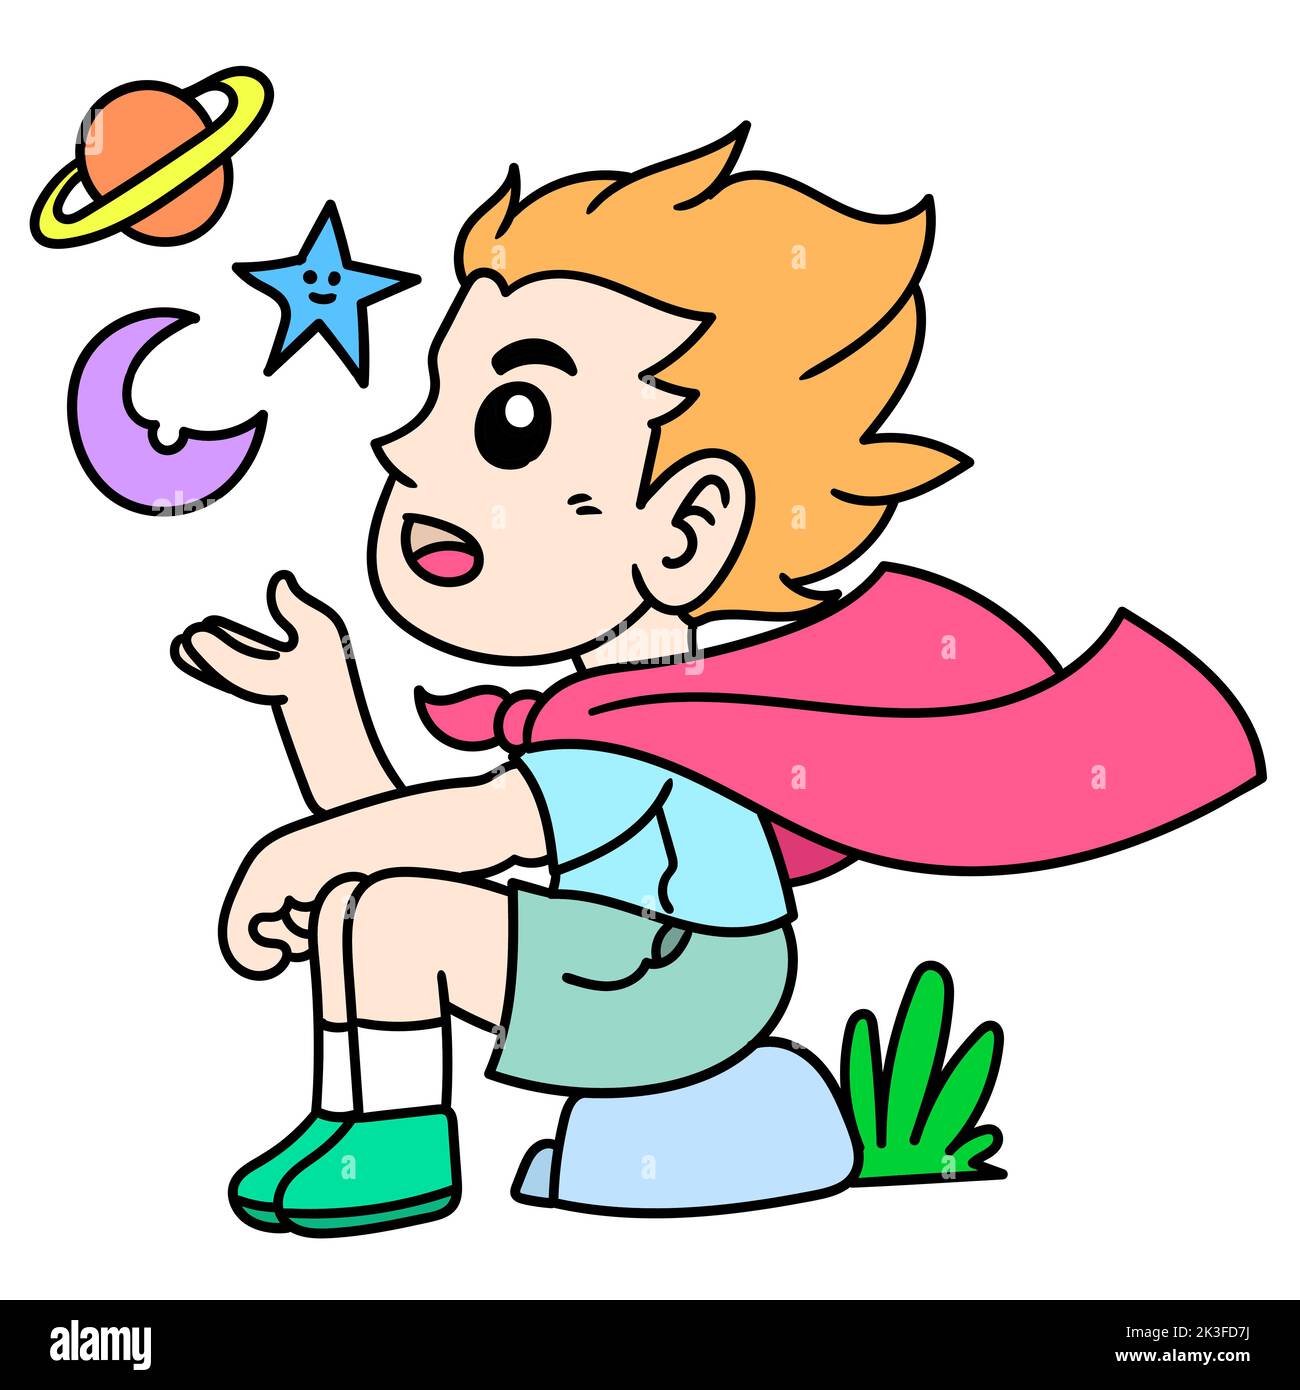 Un dessin animé éditable de style un garçon rêvant de jour, assis sur un rocher et des planètes flottant dans l'air Illustration de Vecteur